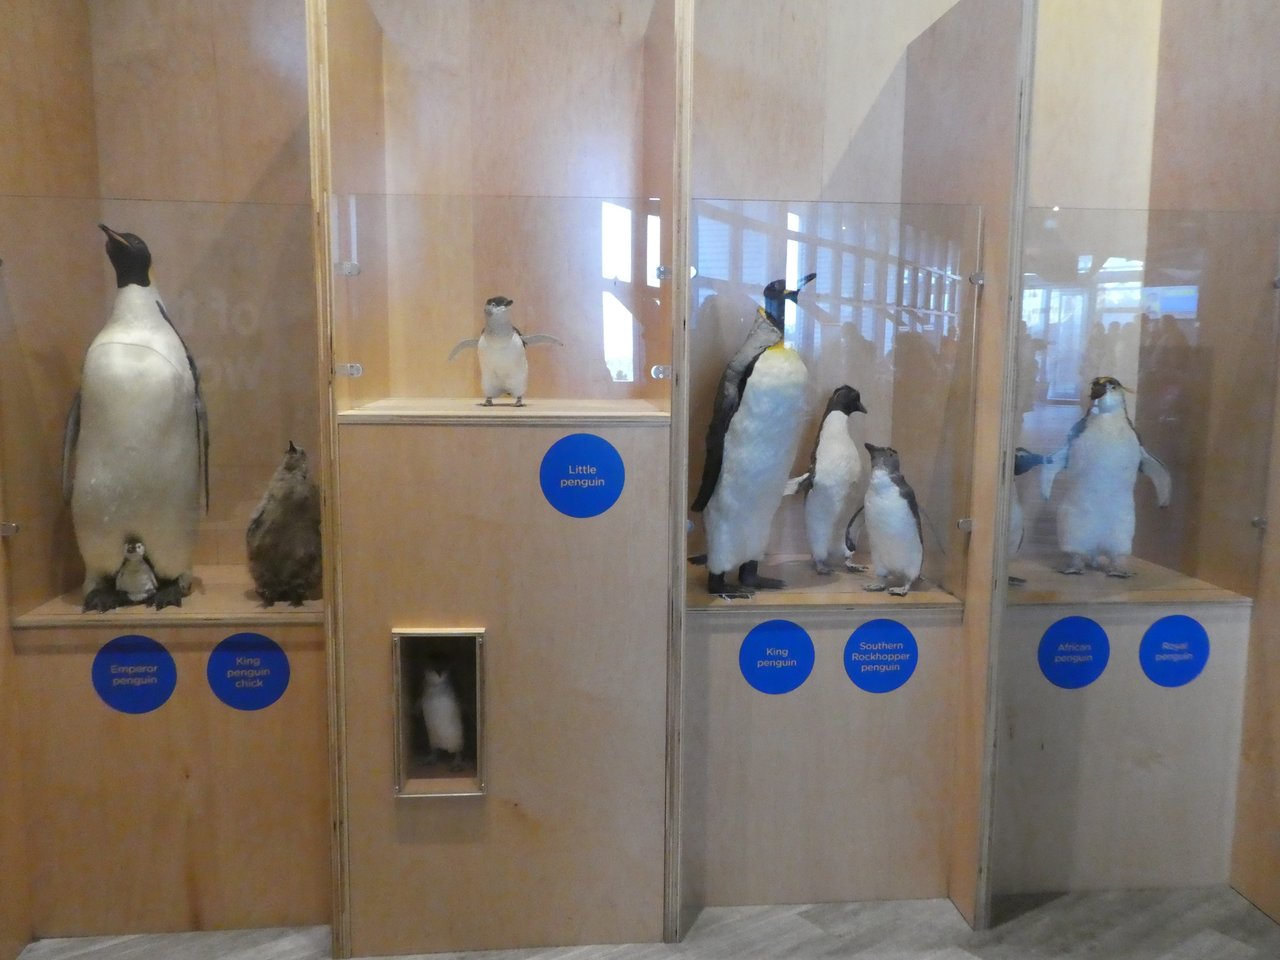 Niestety nie mamy żadnych zdjęć z parady pingwinów, ponieważ był zakaz fotografowania. Mamy za to zdjęcie z wystawy w centrum z wewnątrz budynku), na którym widać jak mały jest little penguin- pingwin australijski, w porównaniu z innymi pingwinami. Druga gablotka od lewej